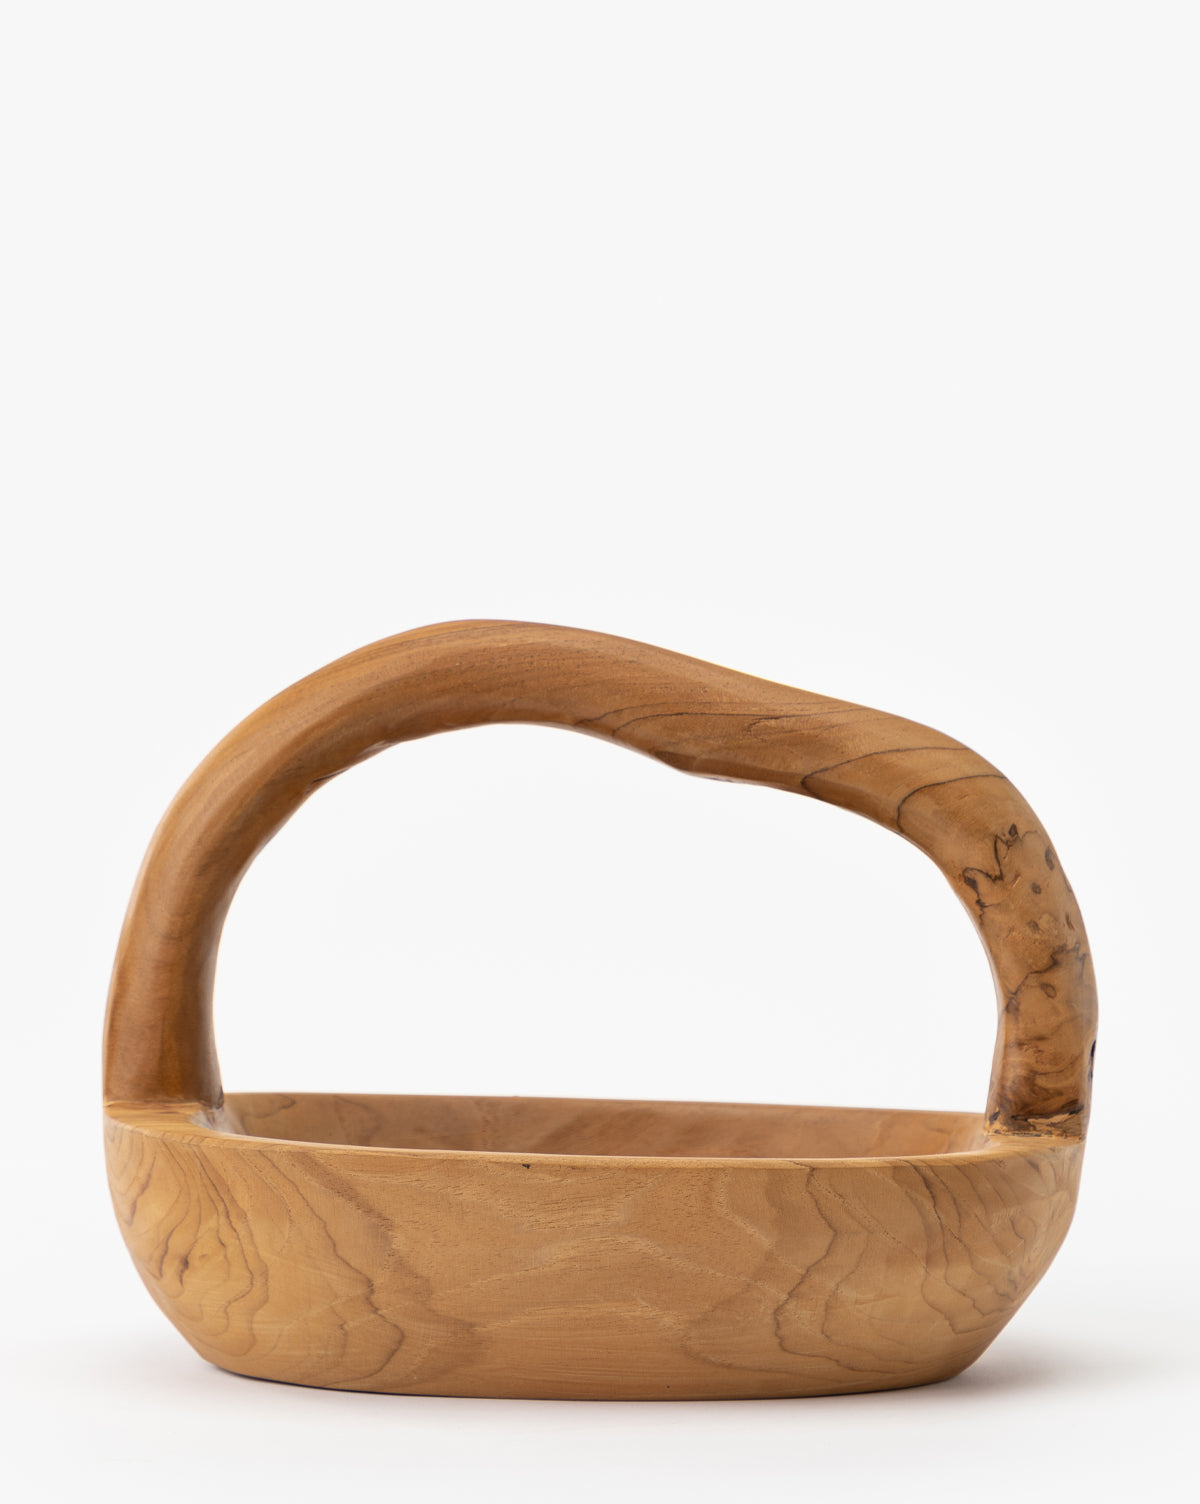 PT Kwalita Bali, Organic Teak Wood Basket